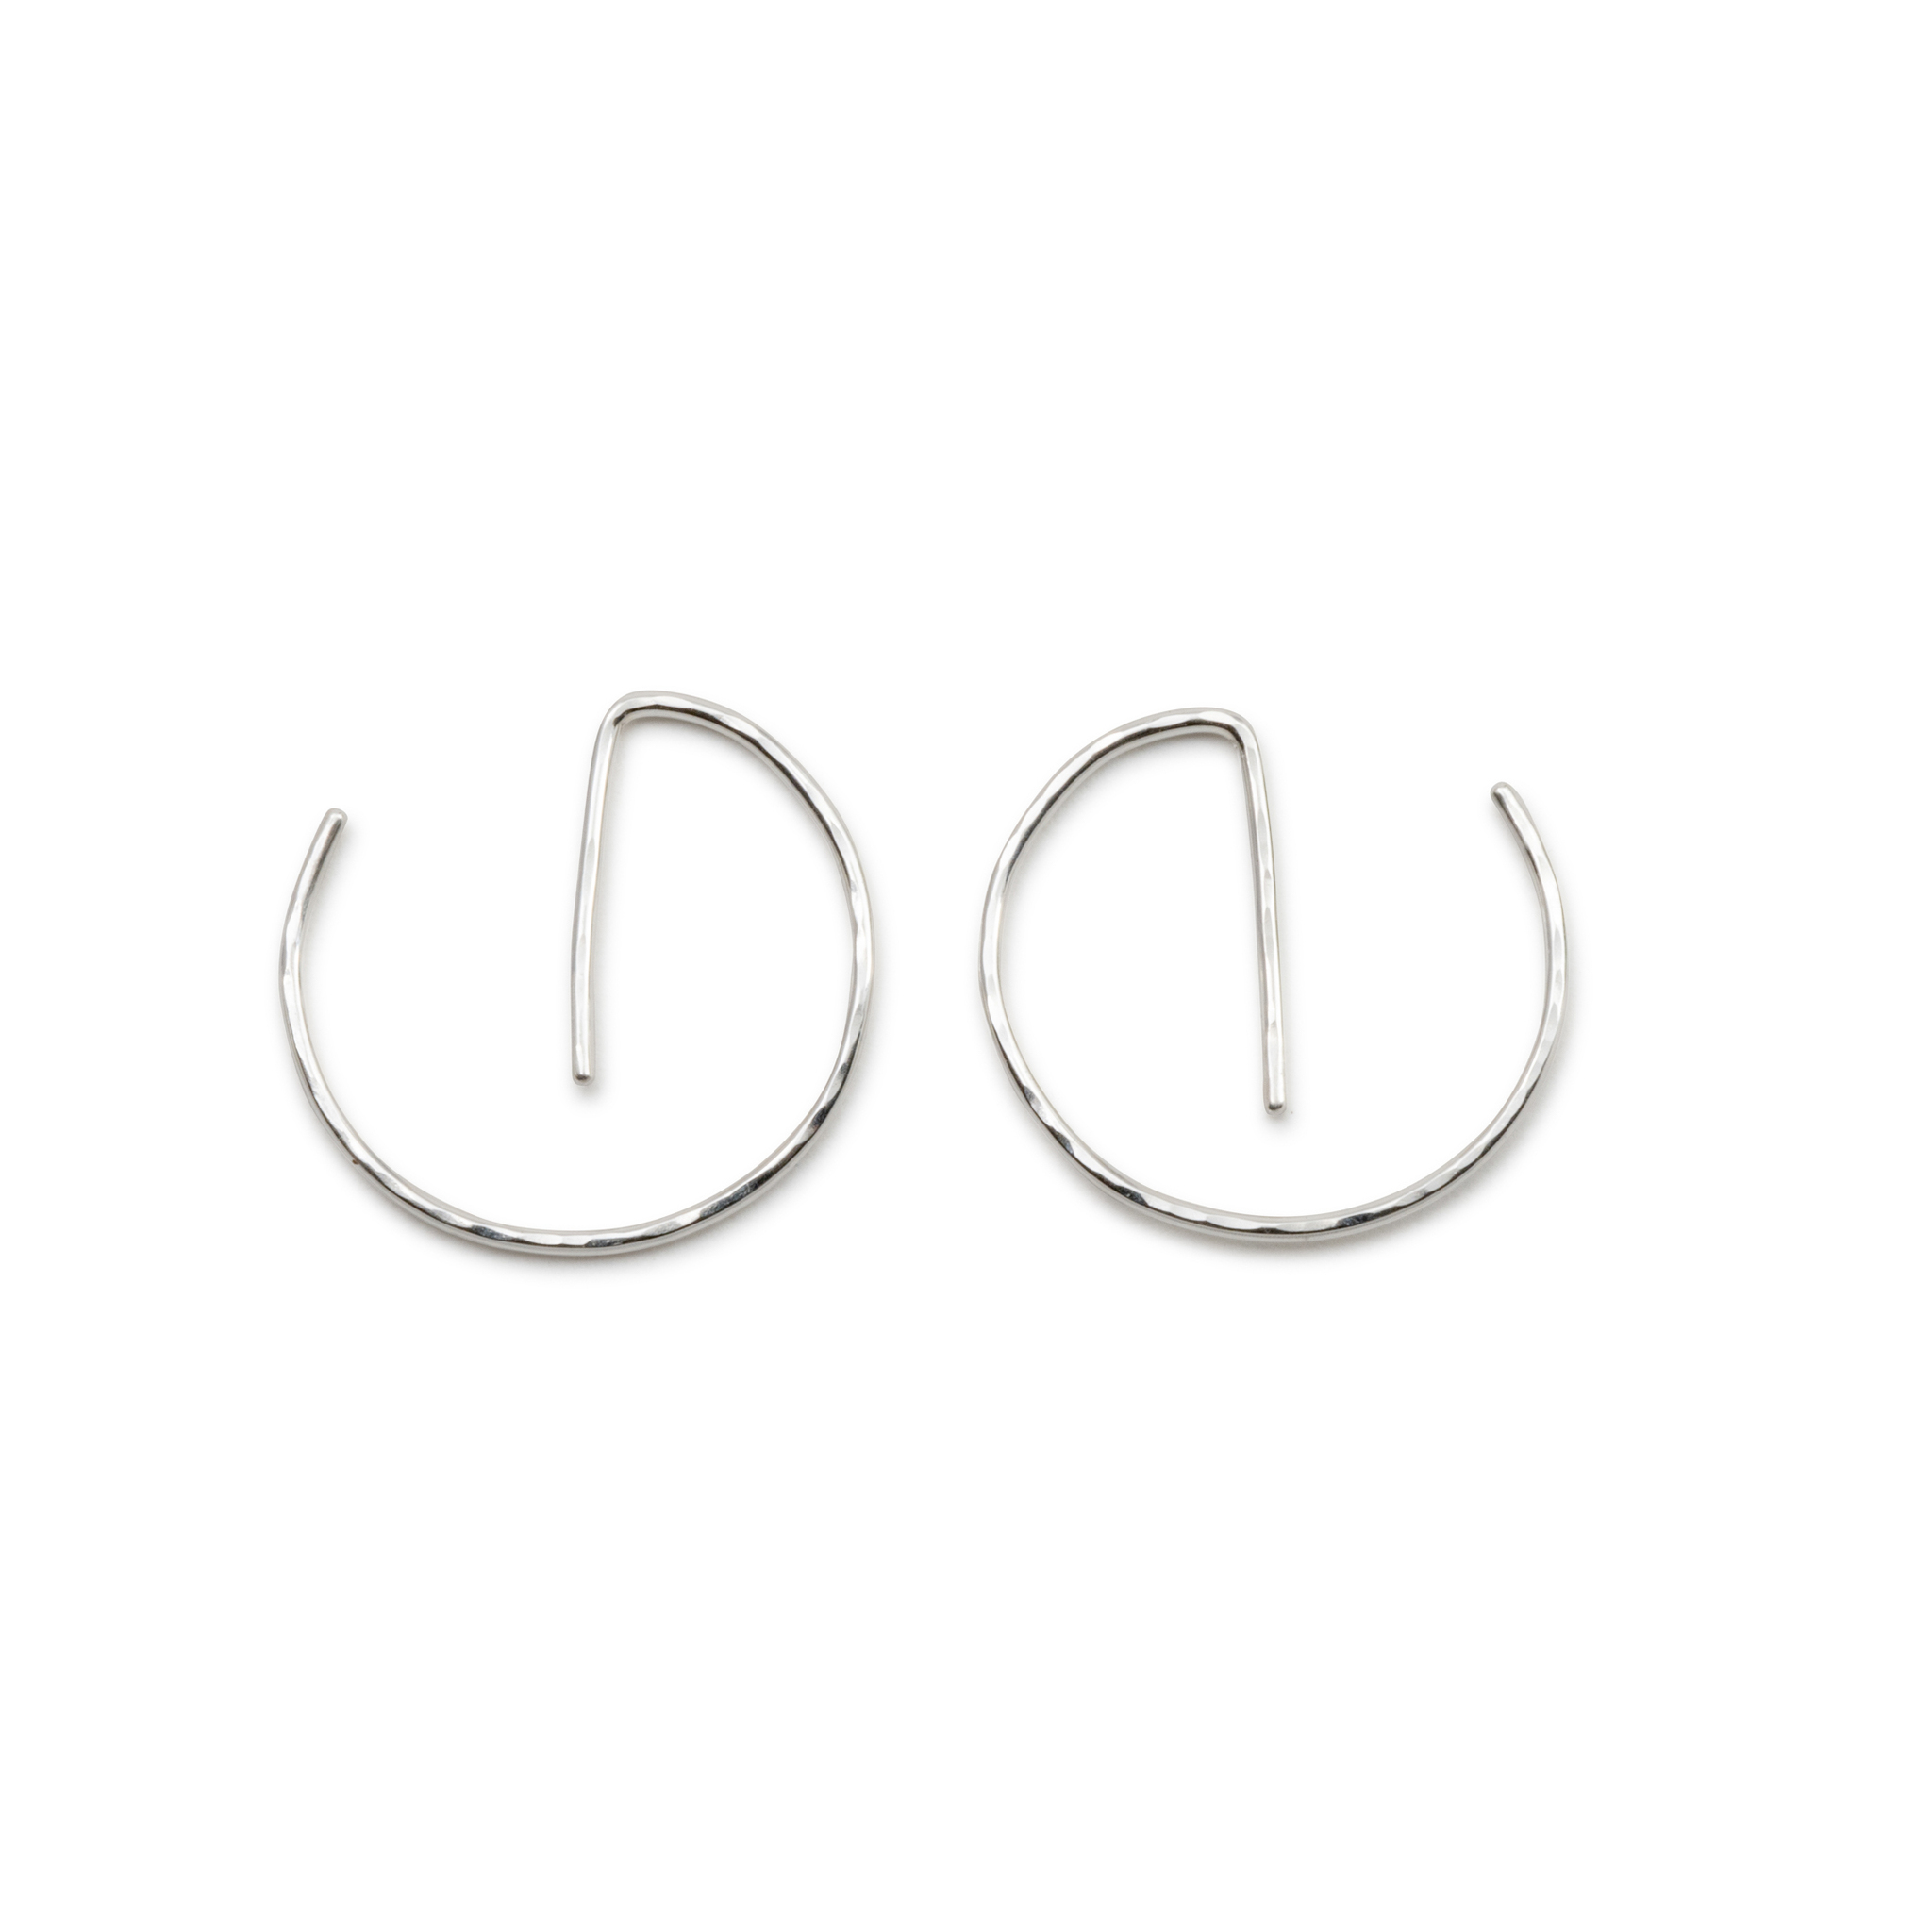 Handmade Hoops Earrings Recycled Silver